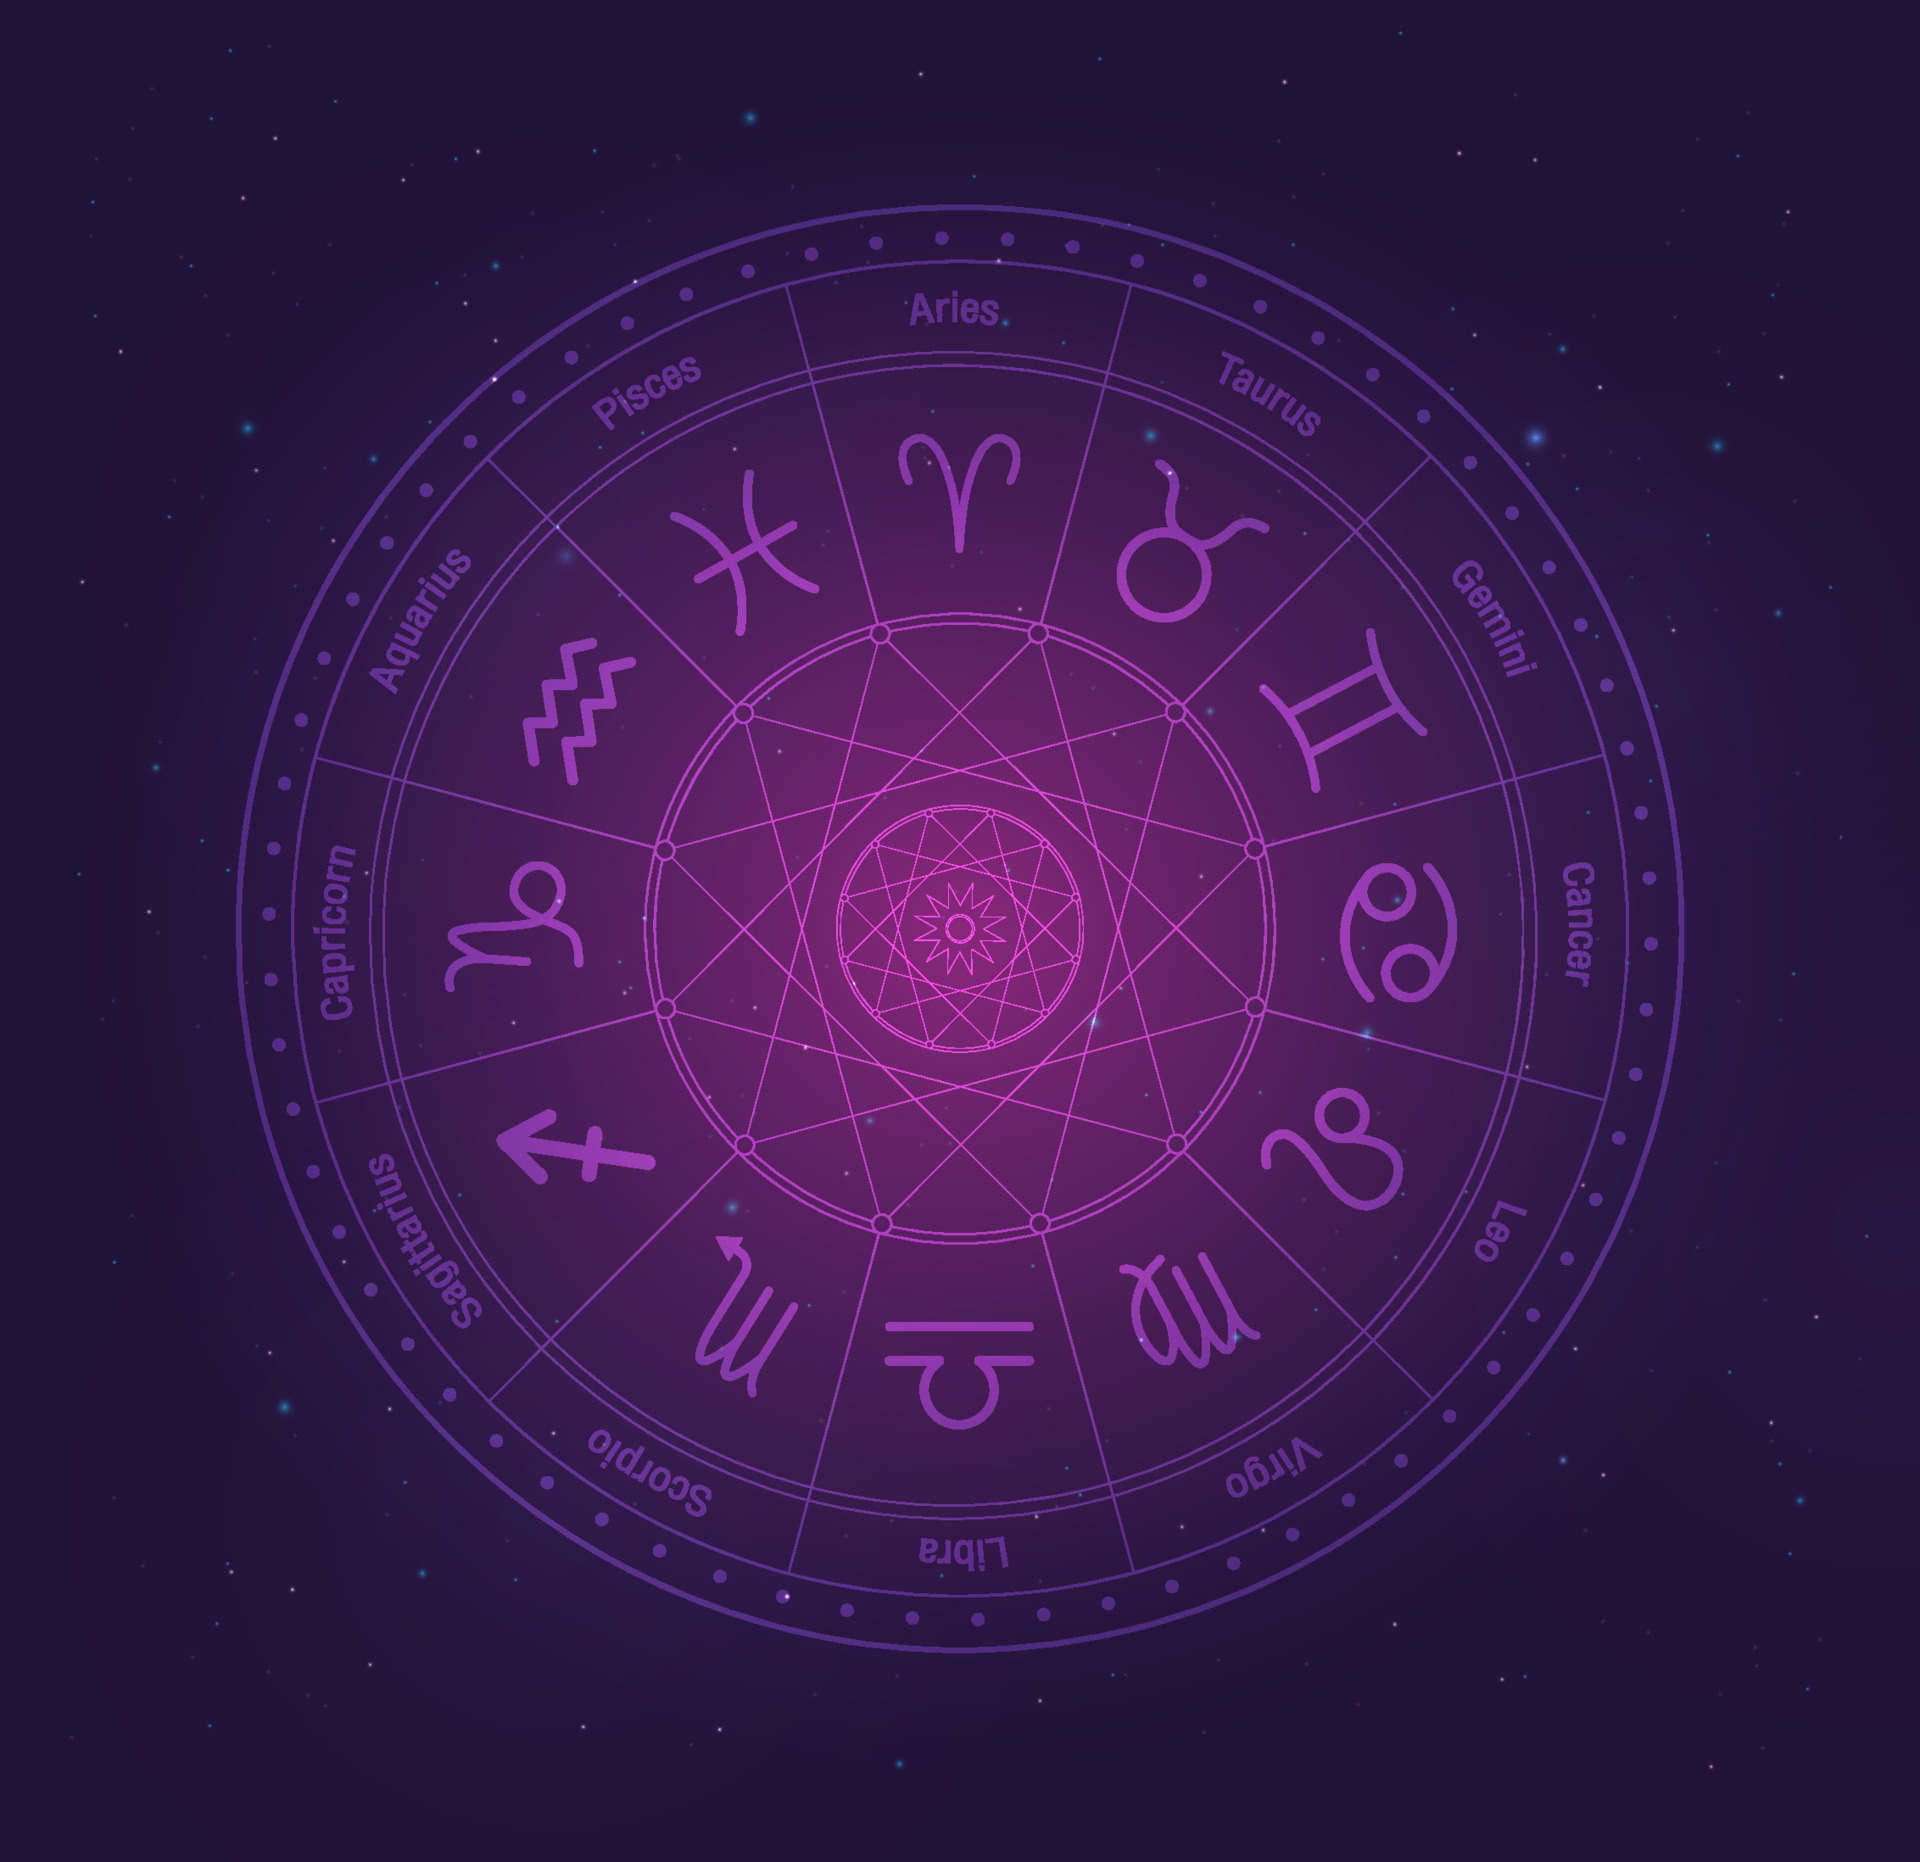 Horoskop e-ropczyce